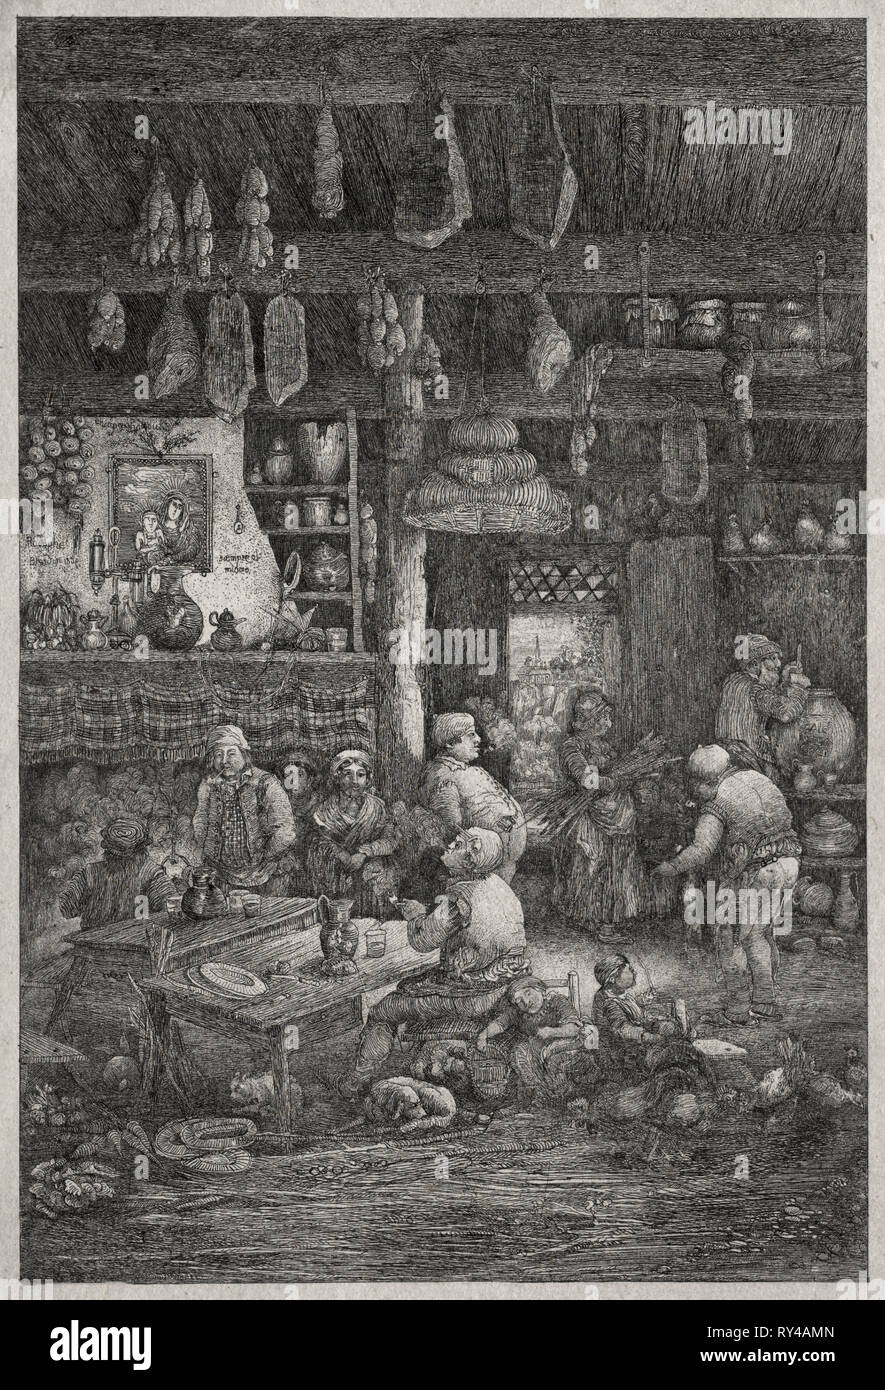 De l'intérieur moldave, 1856. Rodolphe Bresdin (Français, 1822-1885). Fiche technique : Lithographie ; 31,5 x 23,5 cm (12 3/8 x 9 1/4 in.) ; image : 16,7 x 11,2 cm (6 9/16 x 4 7/16 in Banque D'Images